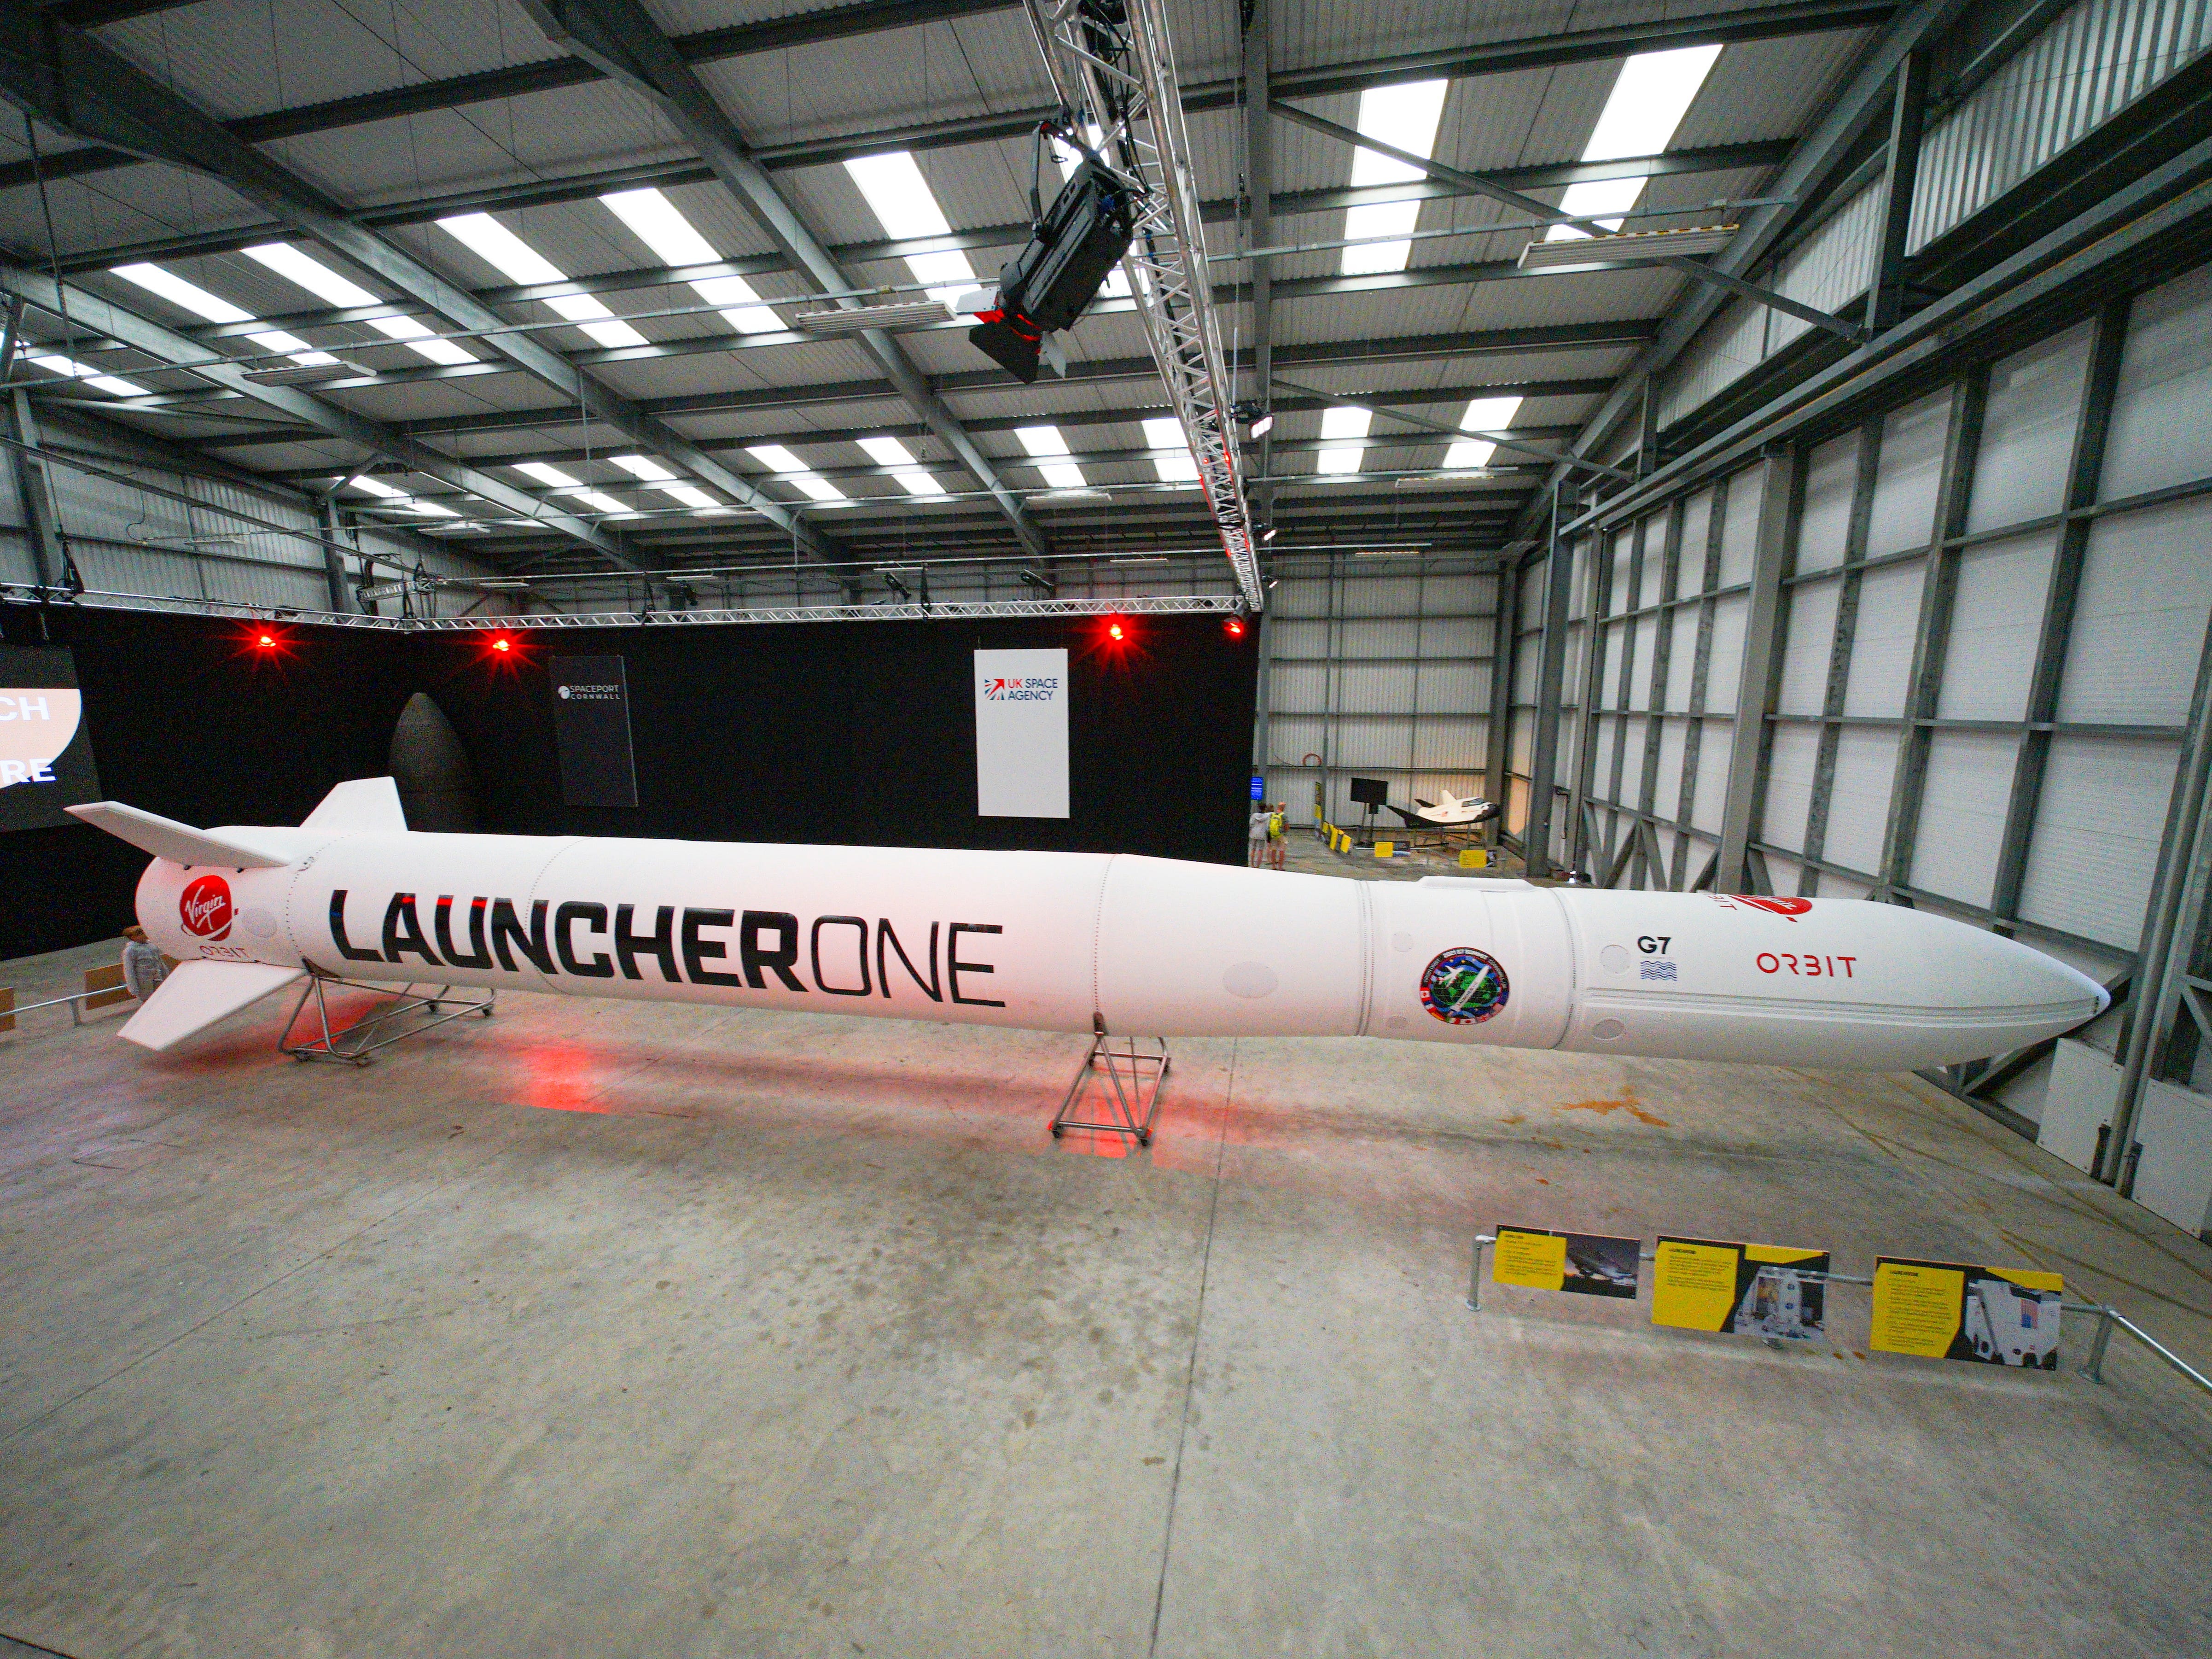 Die Rakete Virgin Orbit Launcher One wird am Eröffnungstag der Sommerausstellung Story of a Satellite im Spaceport Cornwall am 2. August 2021 in Newquay, England, ausgestellt.